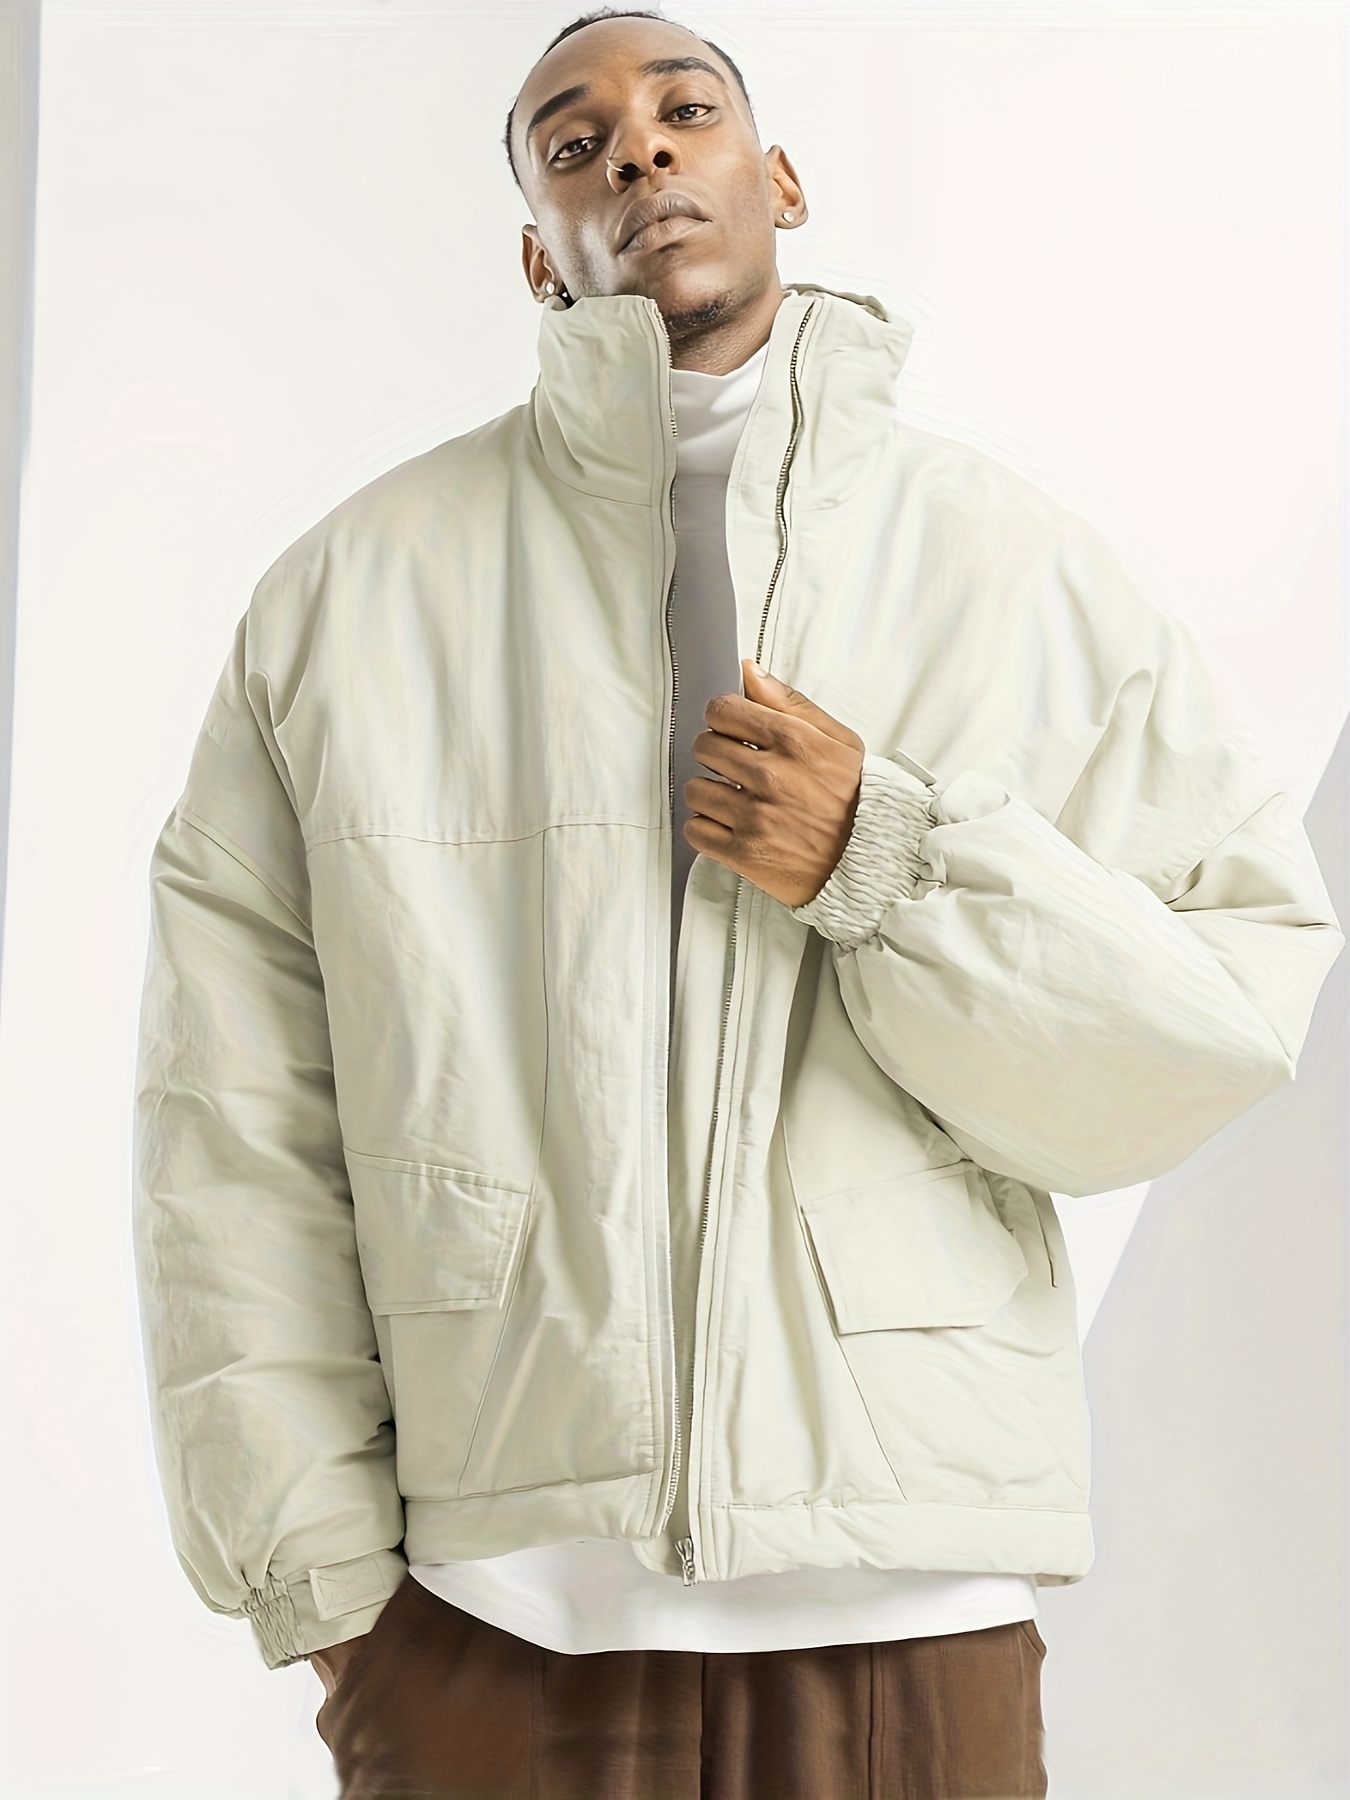 Men's Warm Windbreaker Winter Jacket, Casual Stand Collar Wearproof Cotton  Padded Jacket Coat